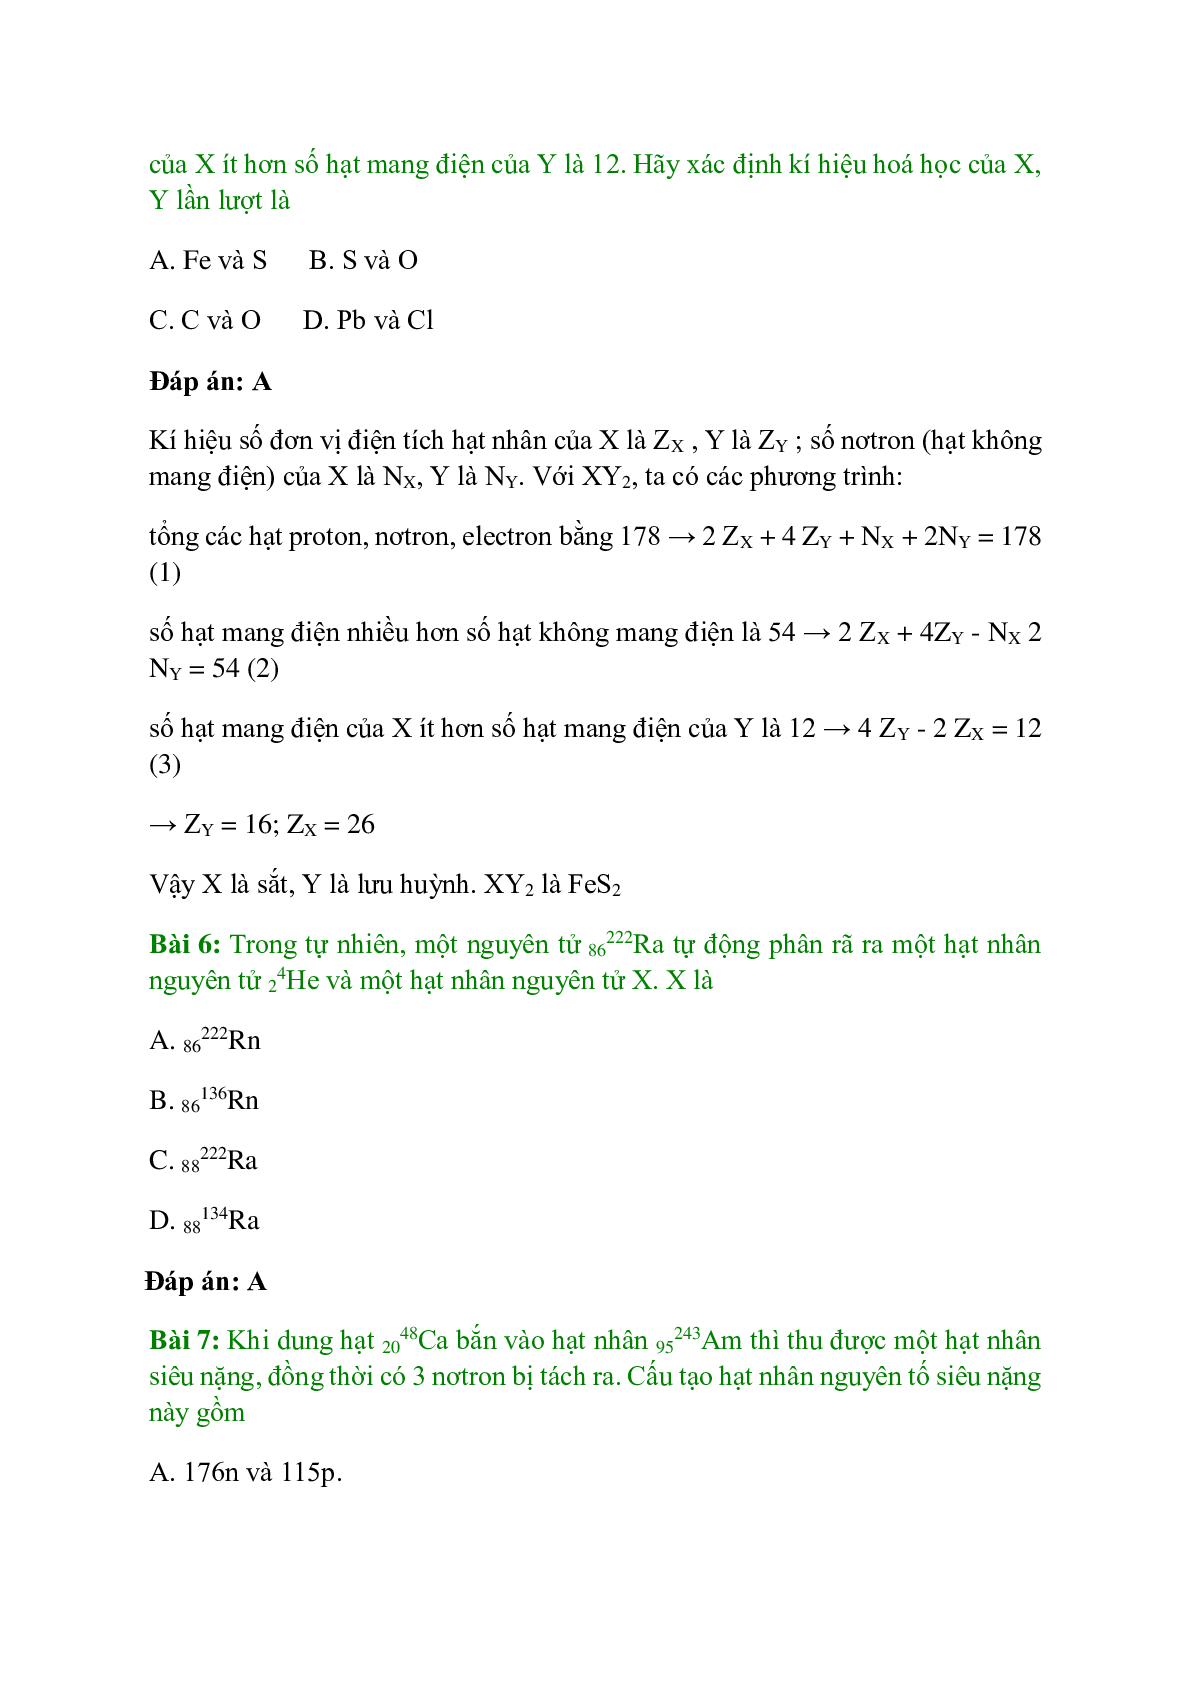 Trắc nghiệm Hạt nhân nguyên tử - Nguyên tố hóa học - Đồng vị có đáp án - Hóa học 10 (trang 3)